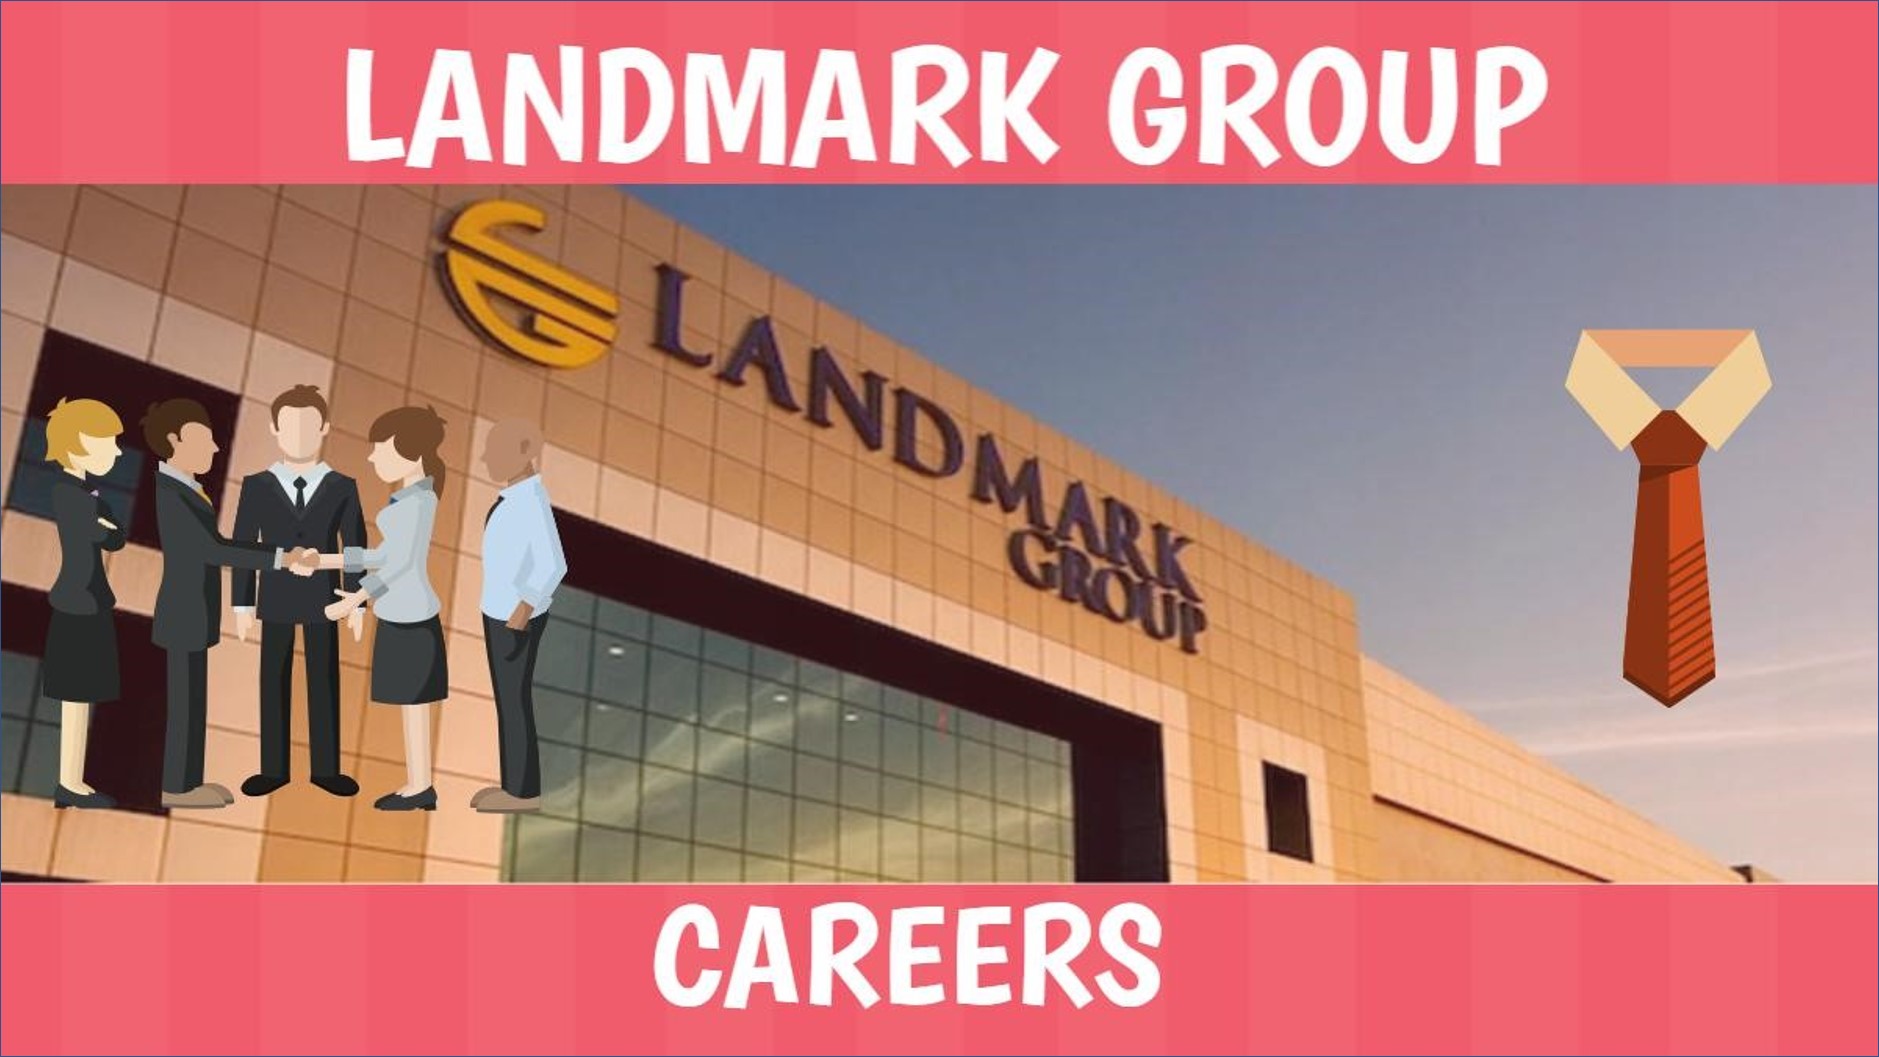 مجموعة لاند مارك قطر تعلن عن فرص عمل للرجال والنساء